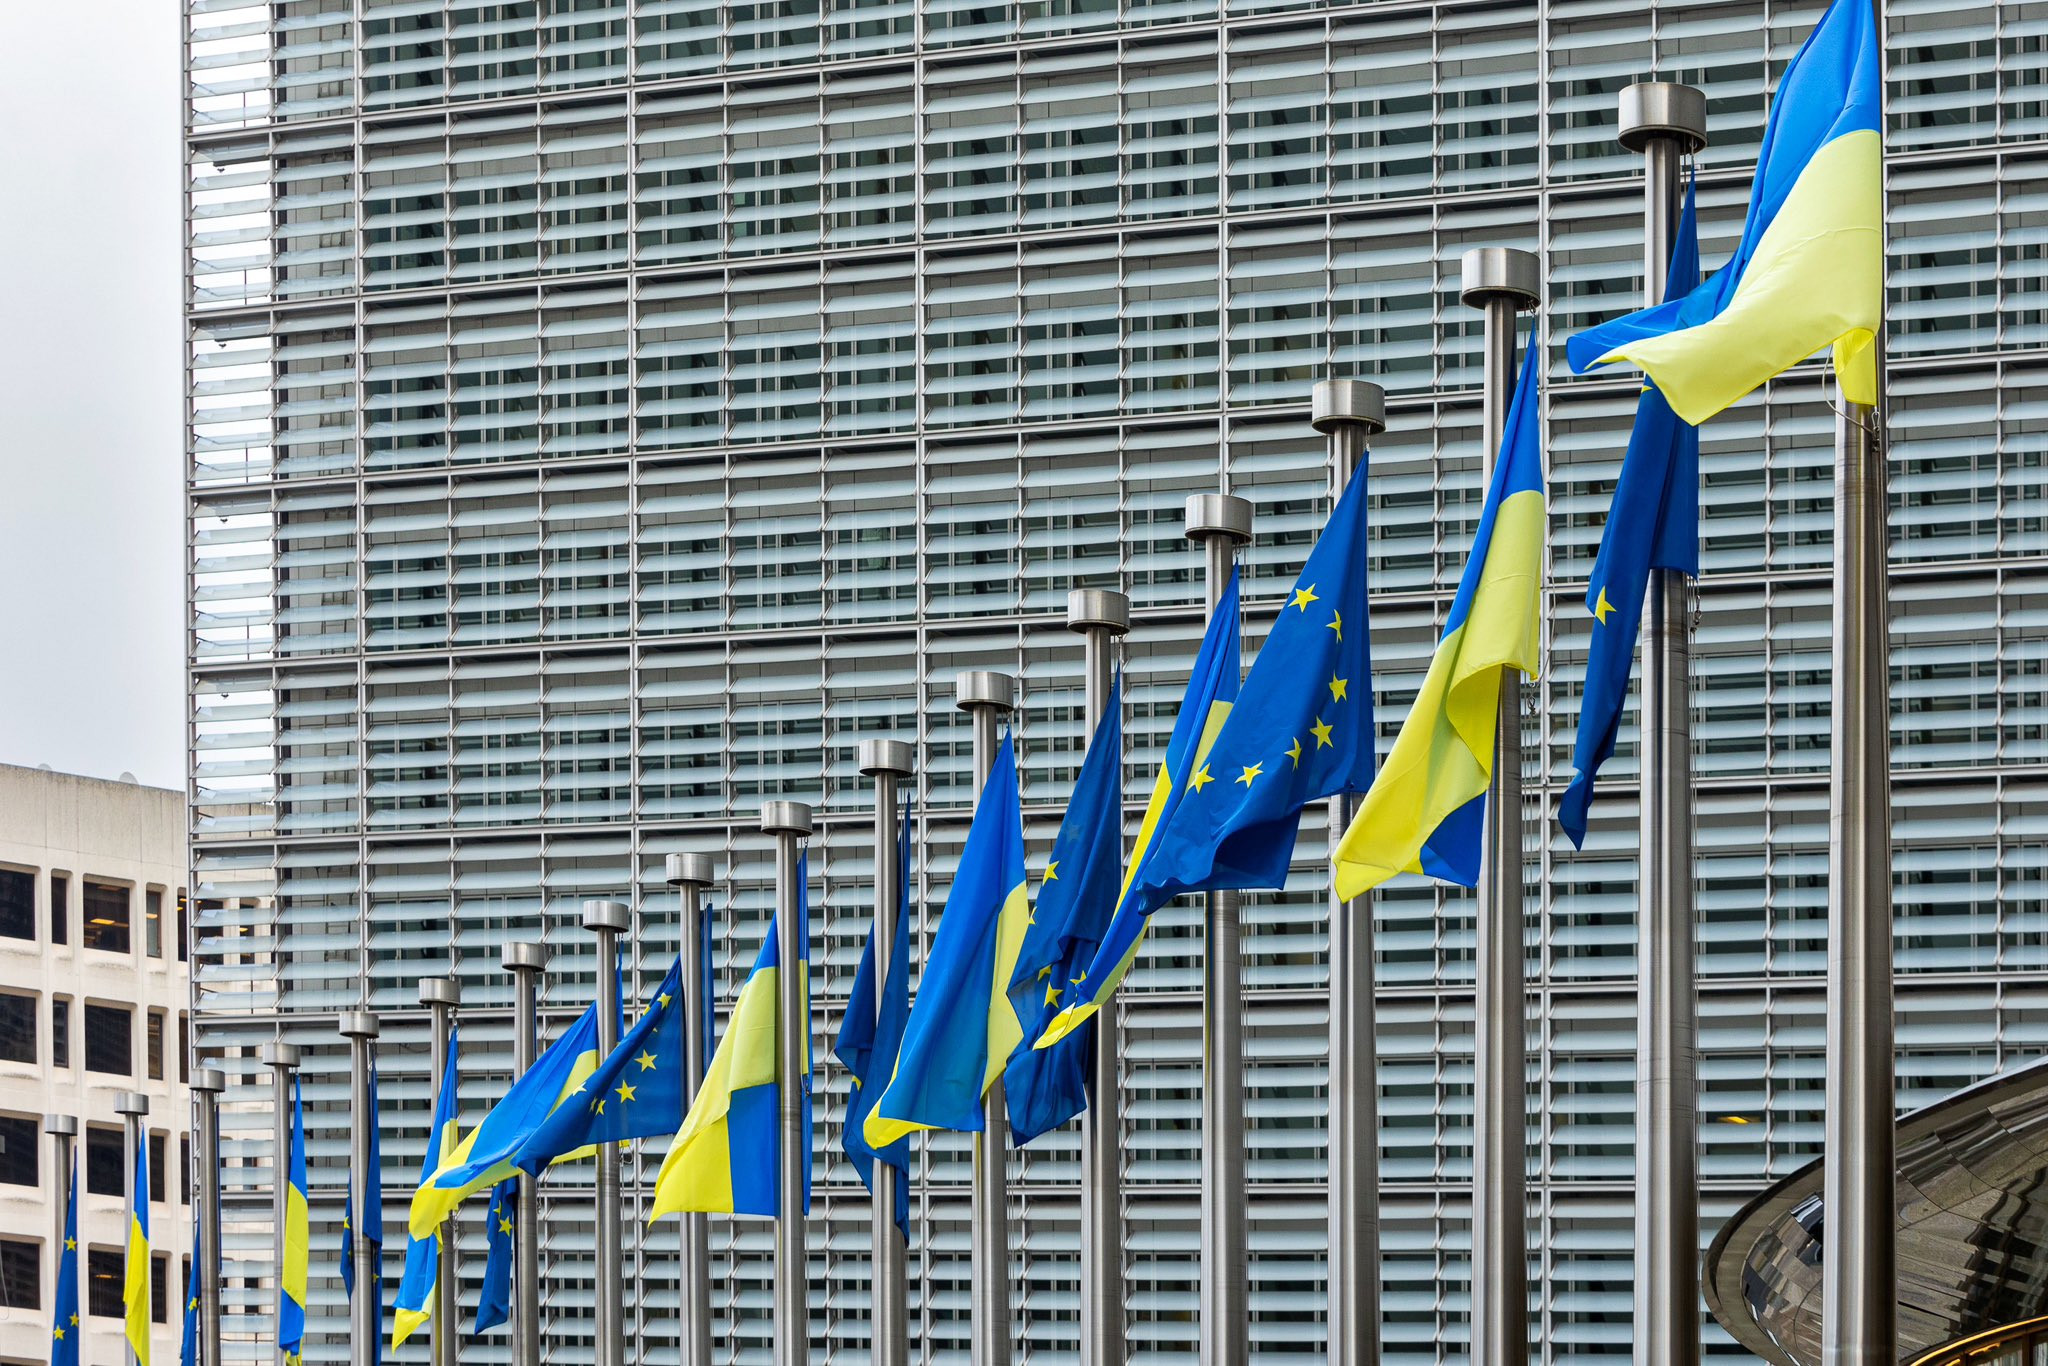 Як Україну підтримує світ: синьо-жовта Ейфелева вежа, гімн у Гаазі та сирени в Варшаві - 1 - зображення